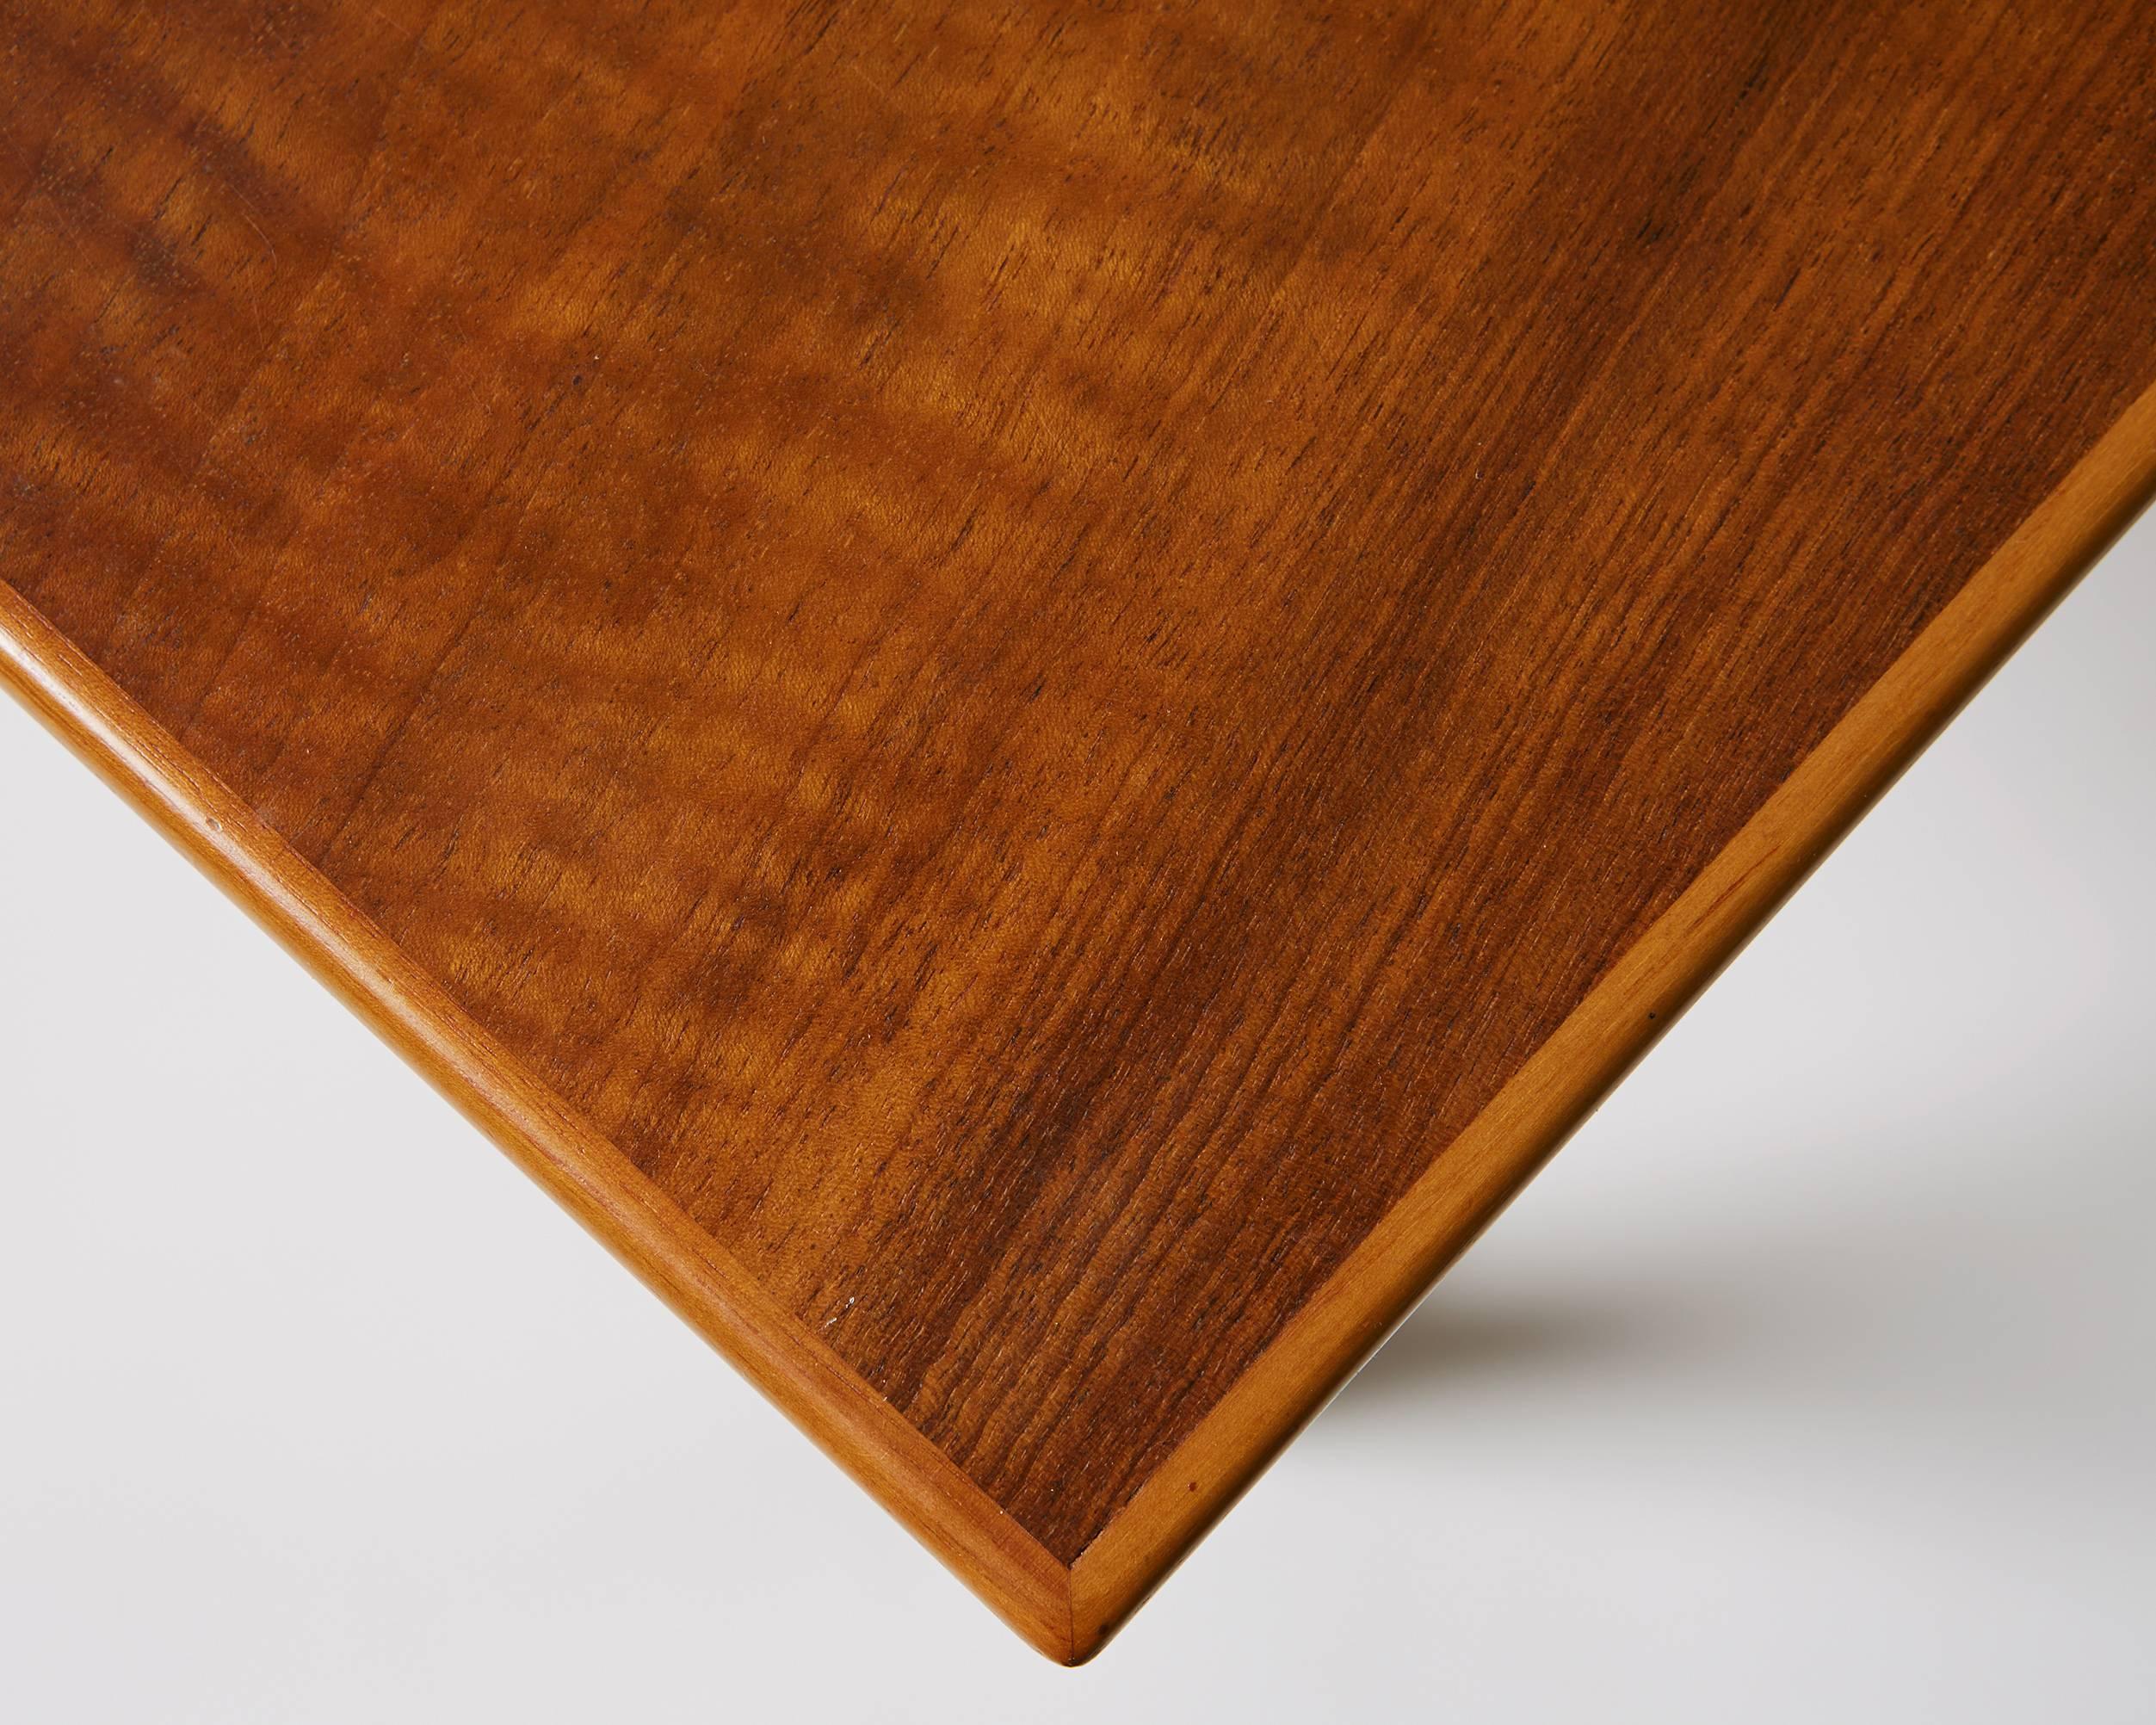 Walnut Pair of Tables/Sideboards Designed by Josef Frank for Svenskt Tenn, Sweden